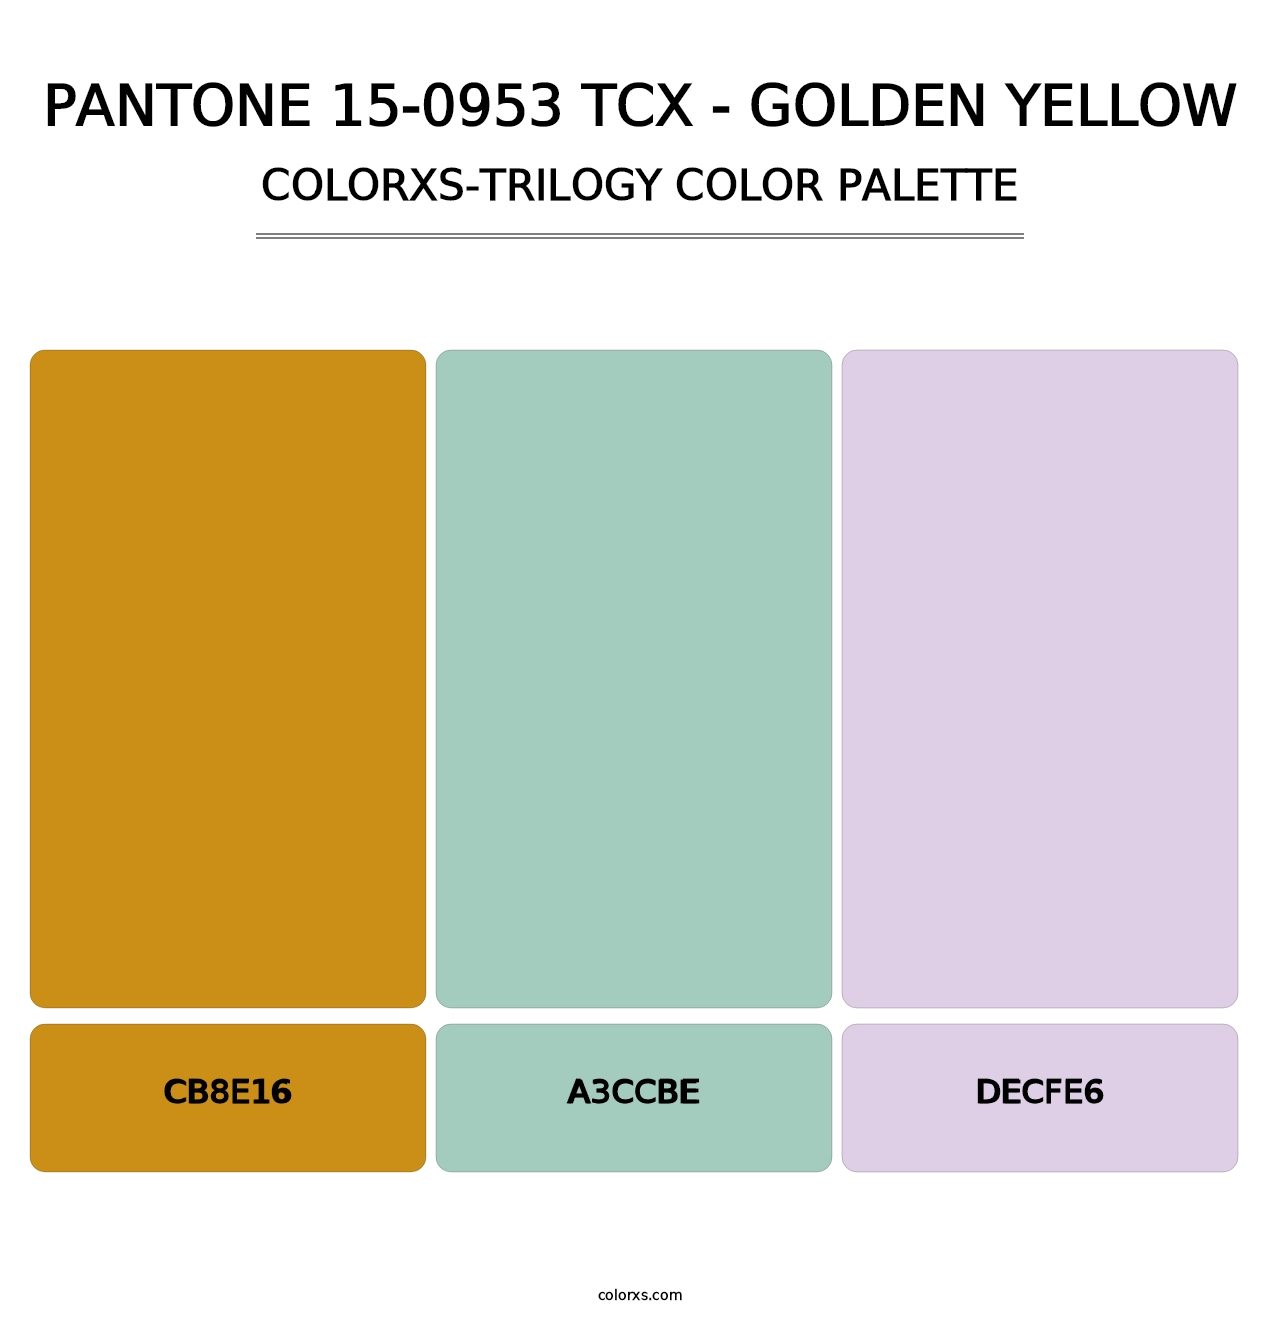 PANTONE 15-0953 TCX - Golden Yellow - Colorxs Trilogy Palette